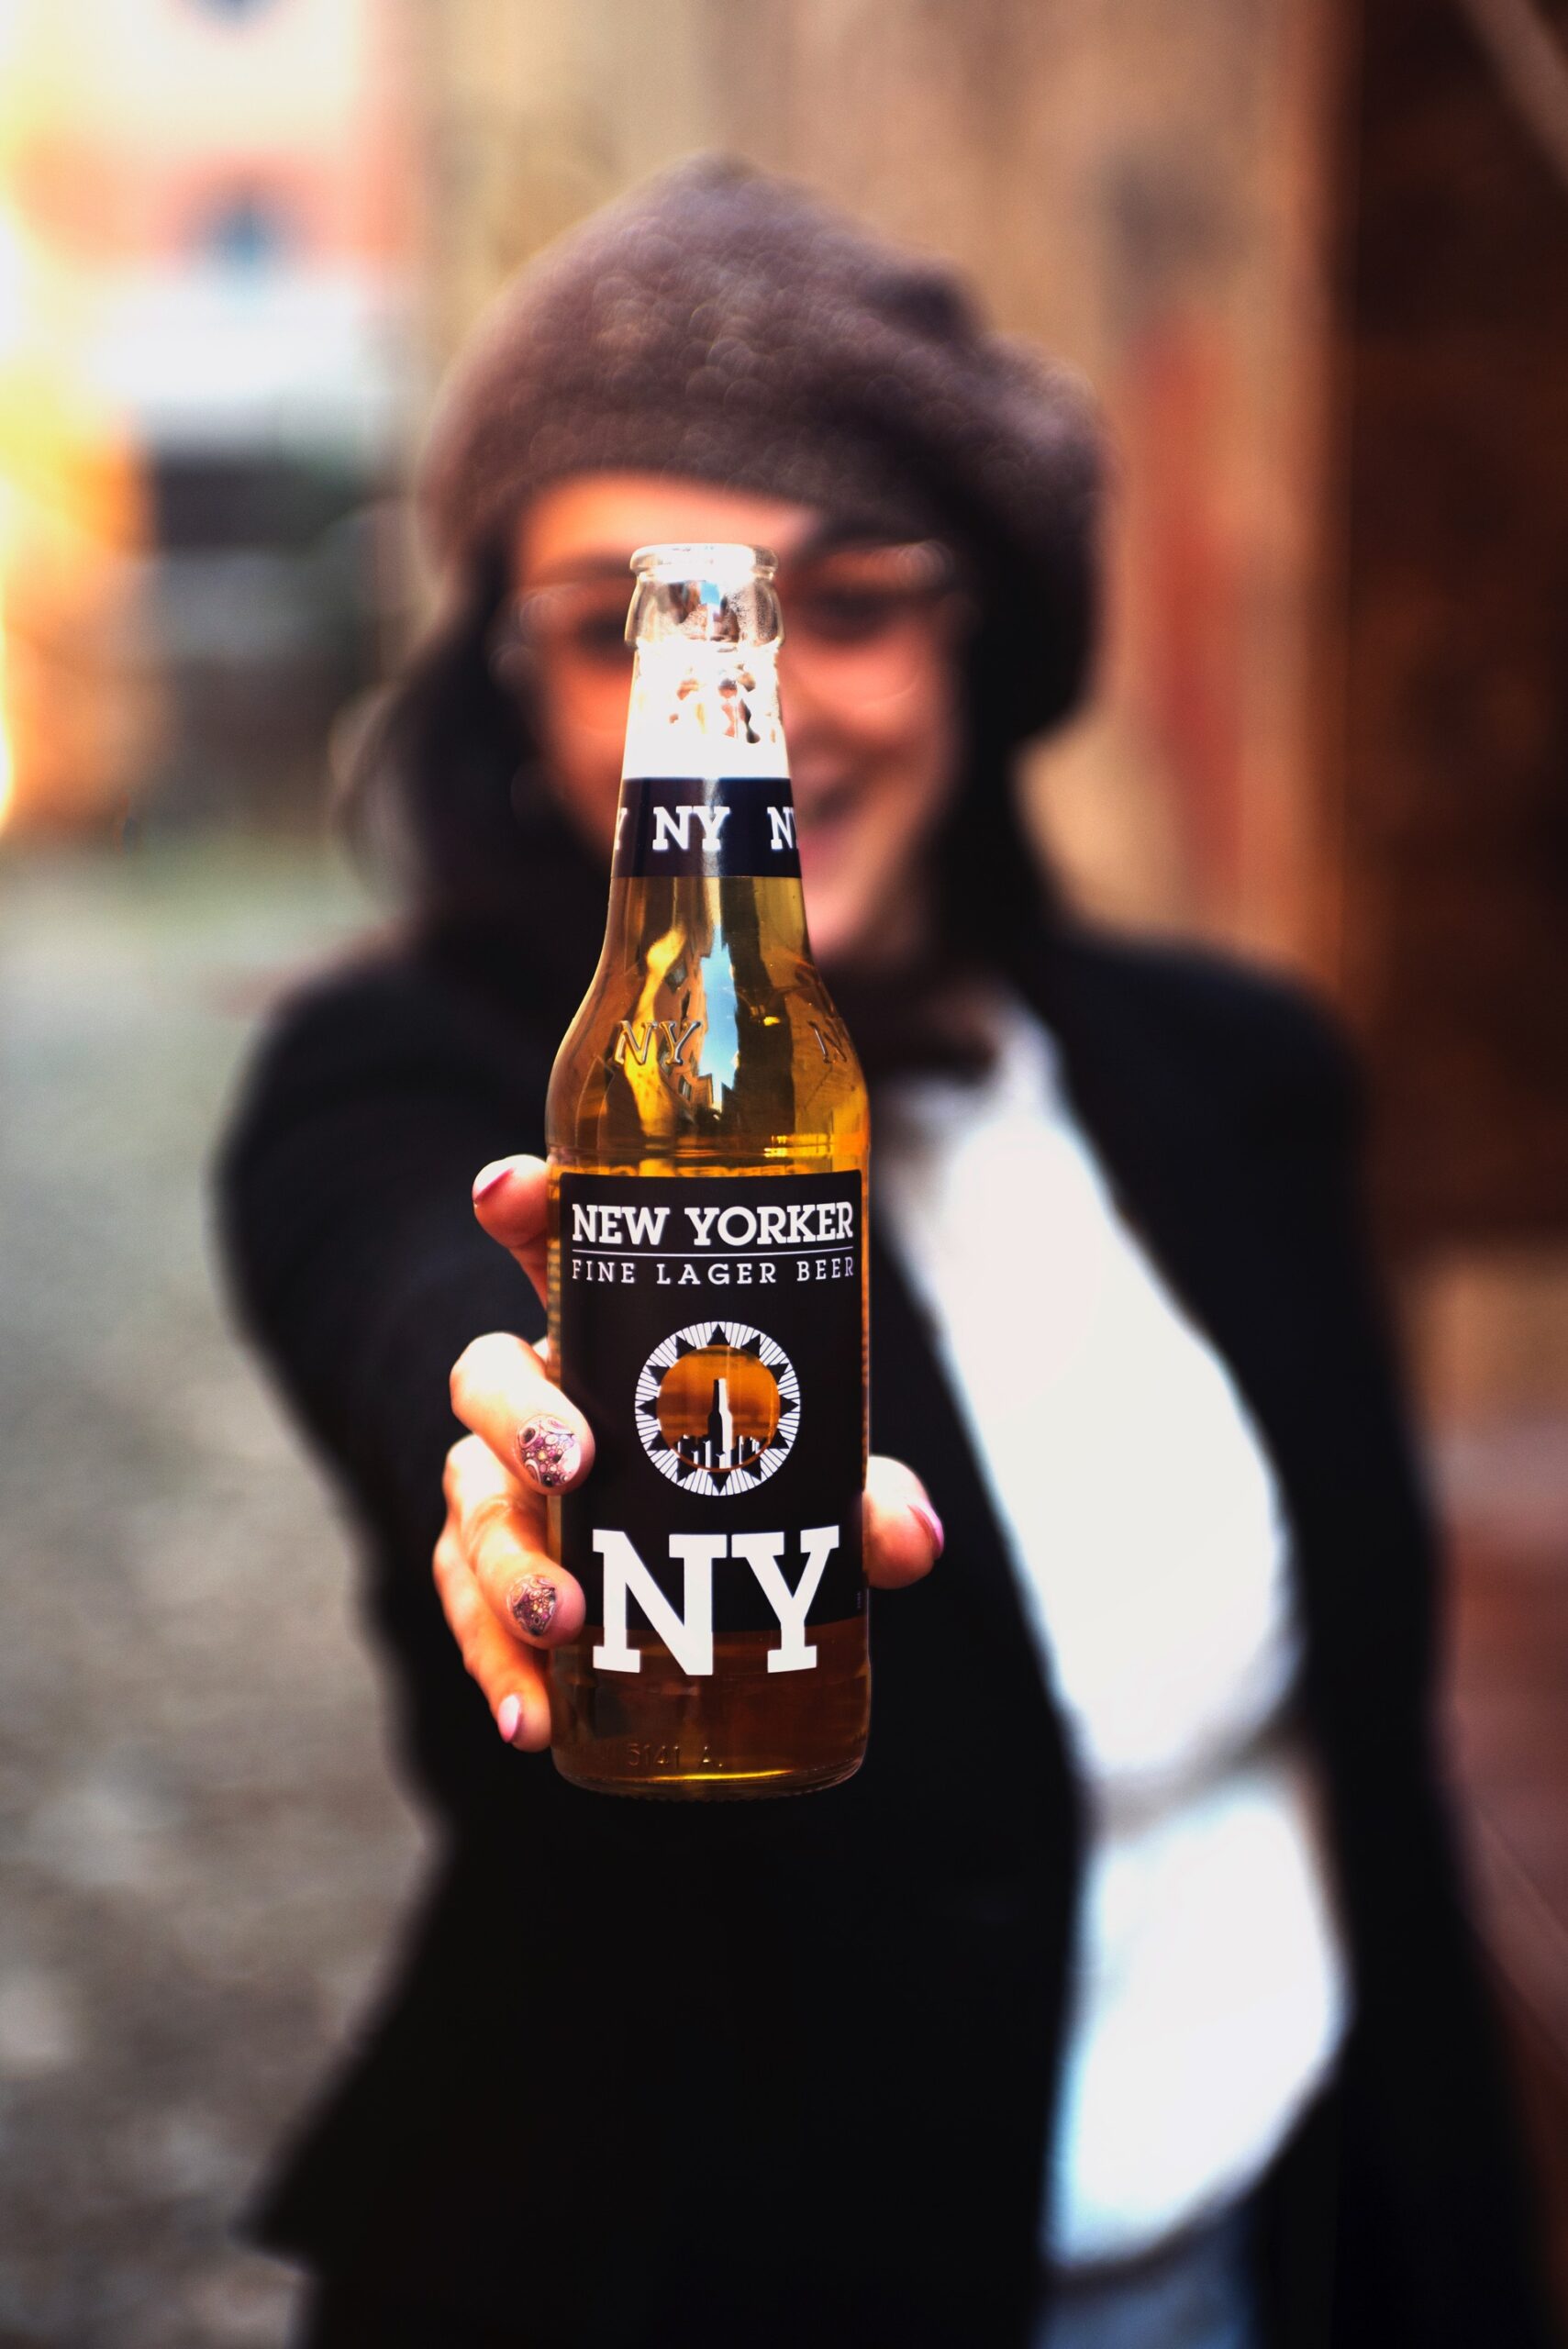 New Yorker Beer